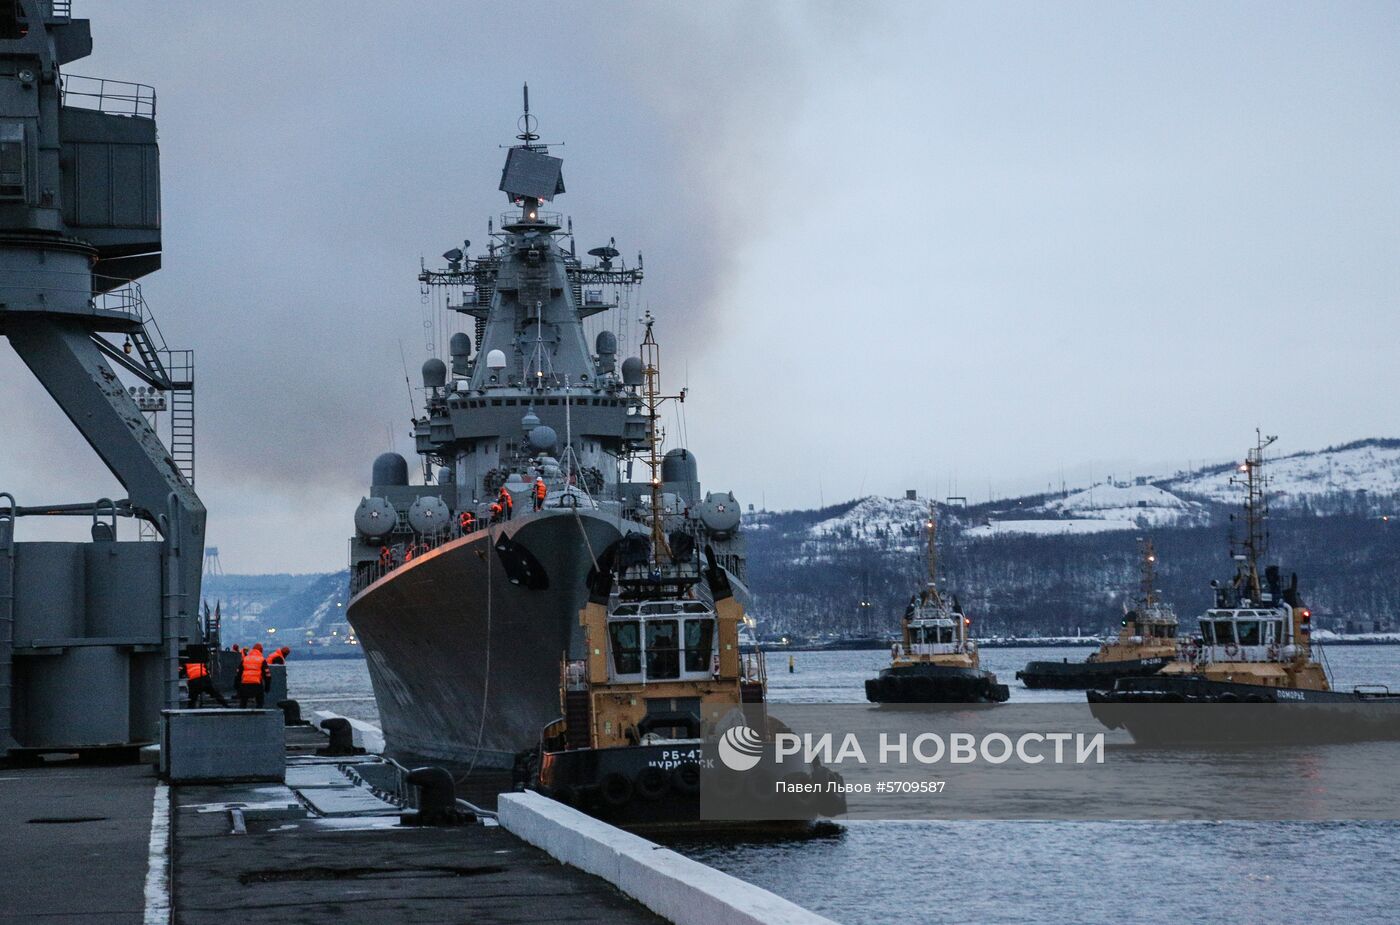 Отряд кораблей Северного флота во главе с крейсером "Маршал Устинов" прибыл в Североморск